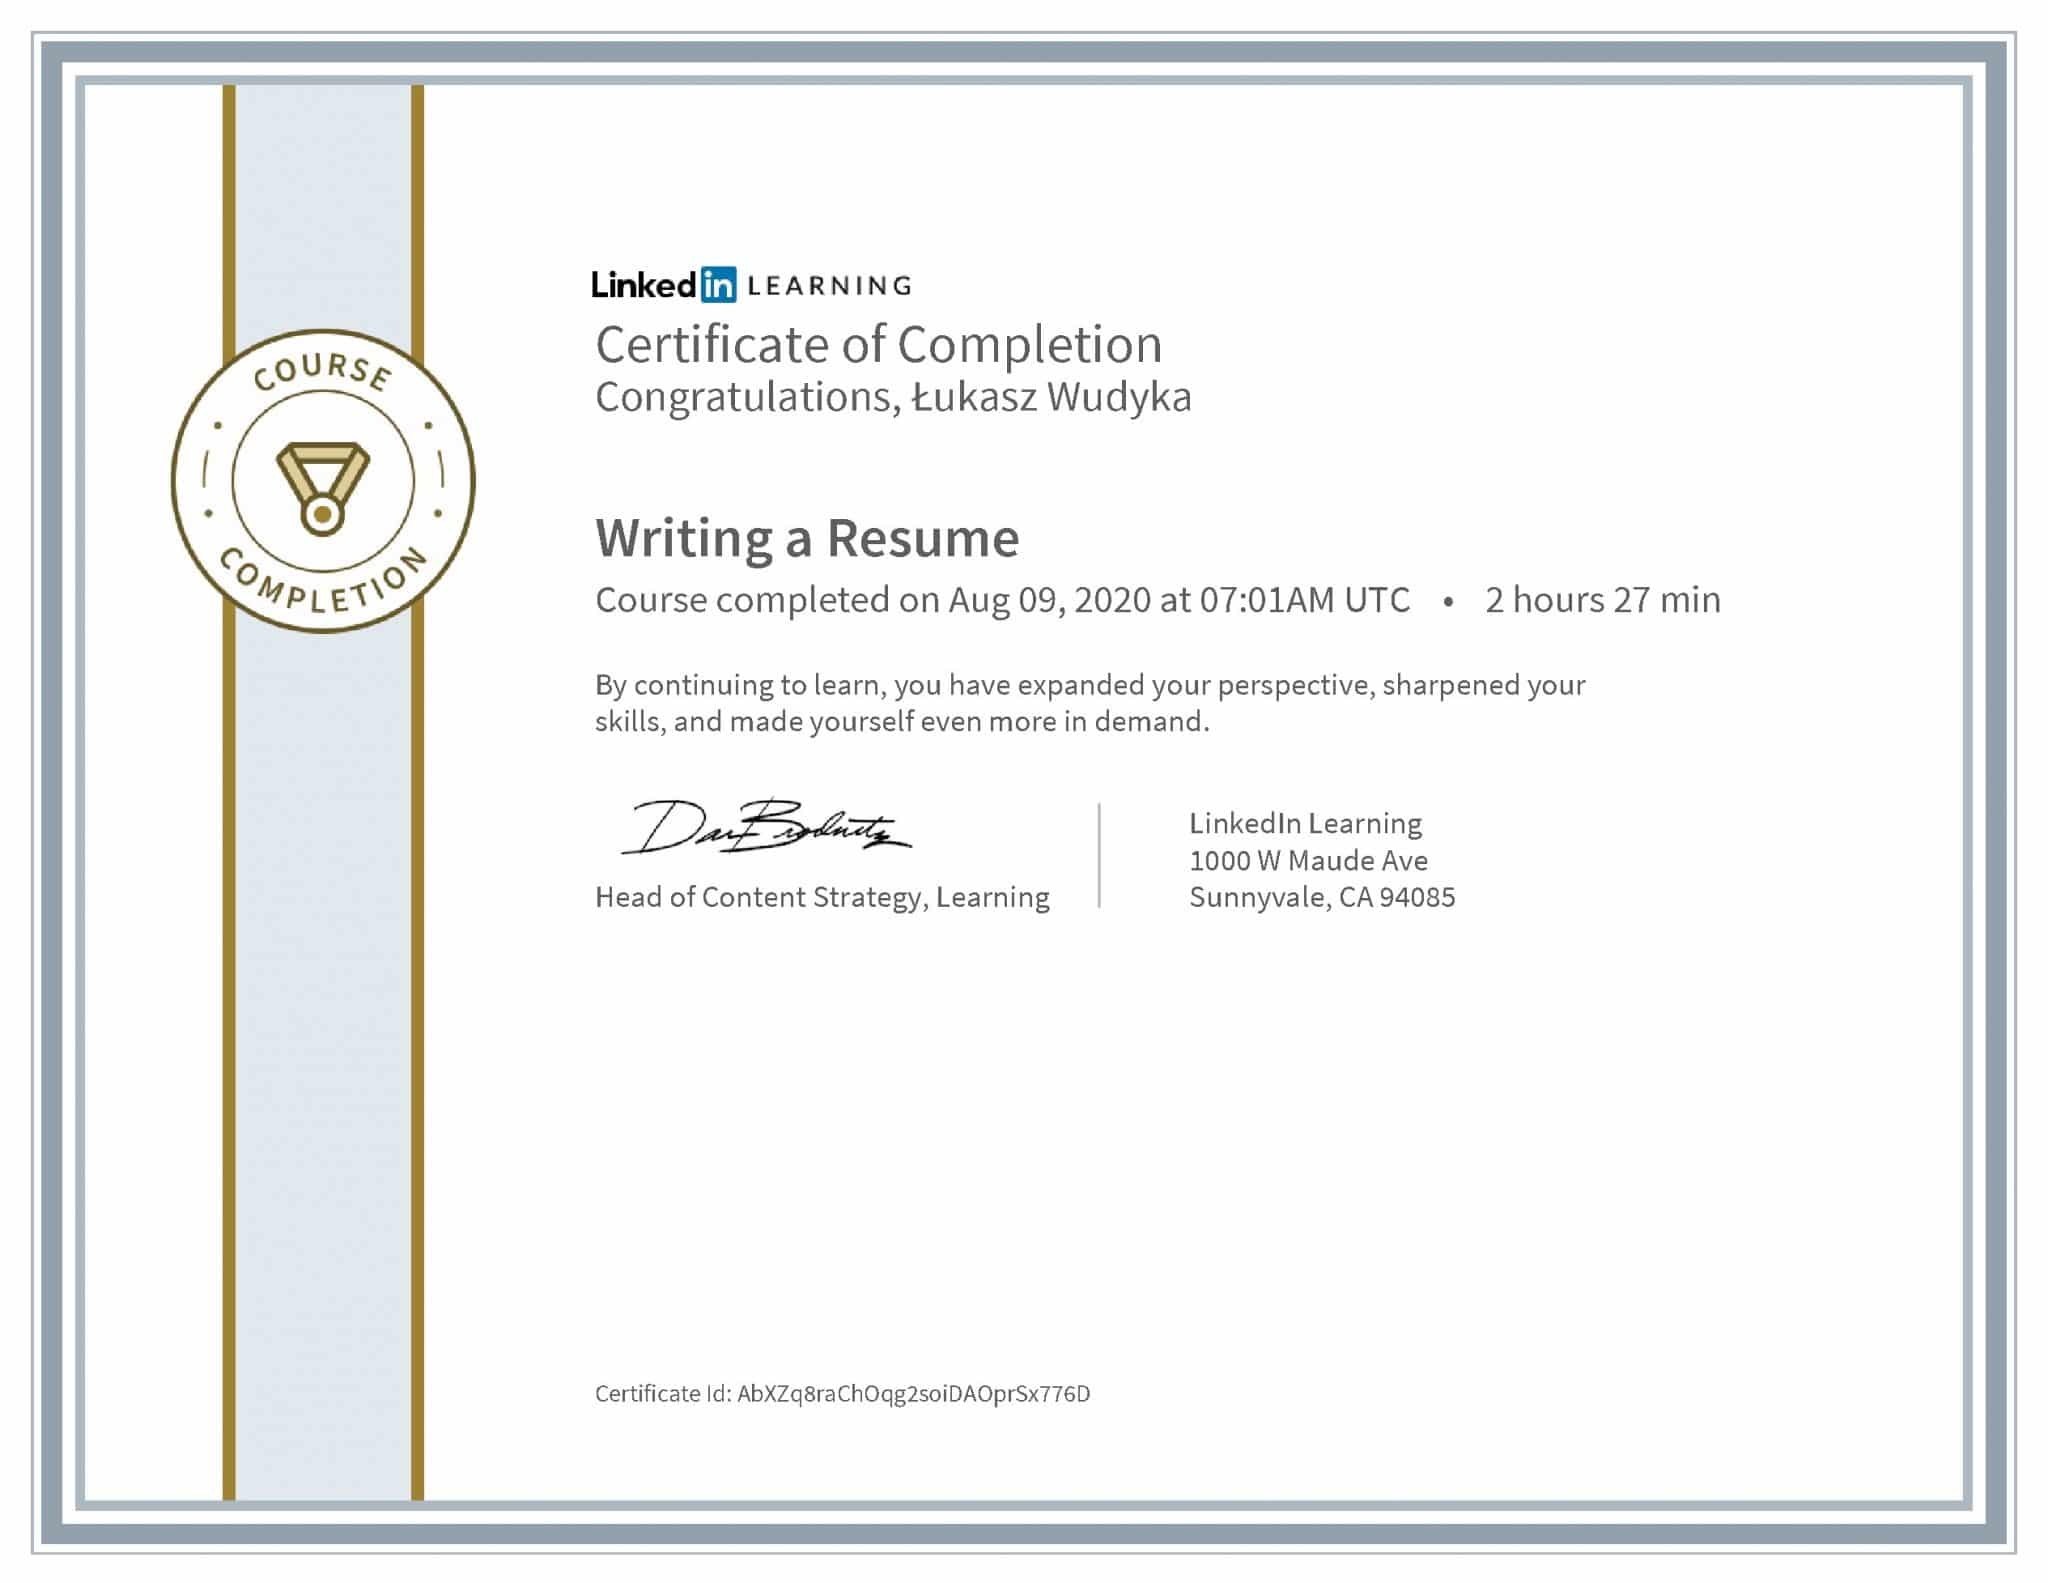 Łukasz Wudyka certyfikat LinkedIn Writing a Resume